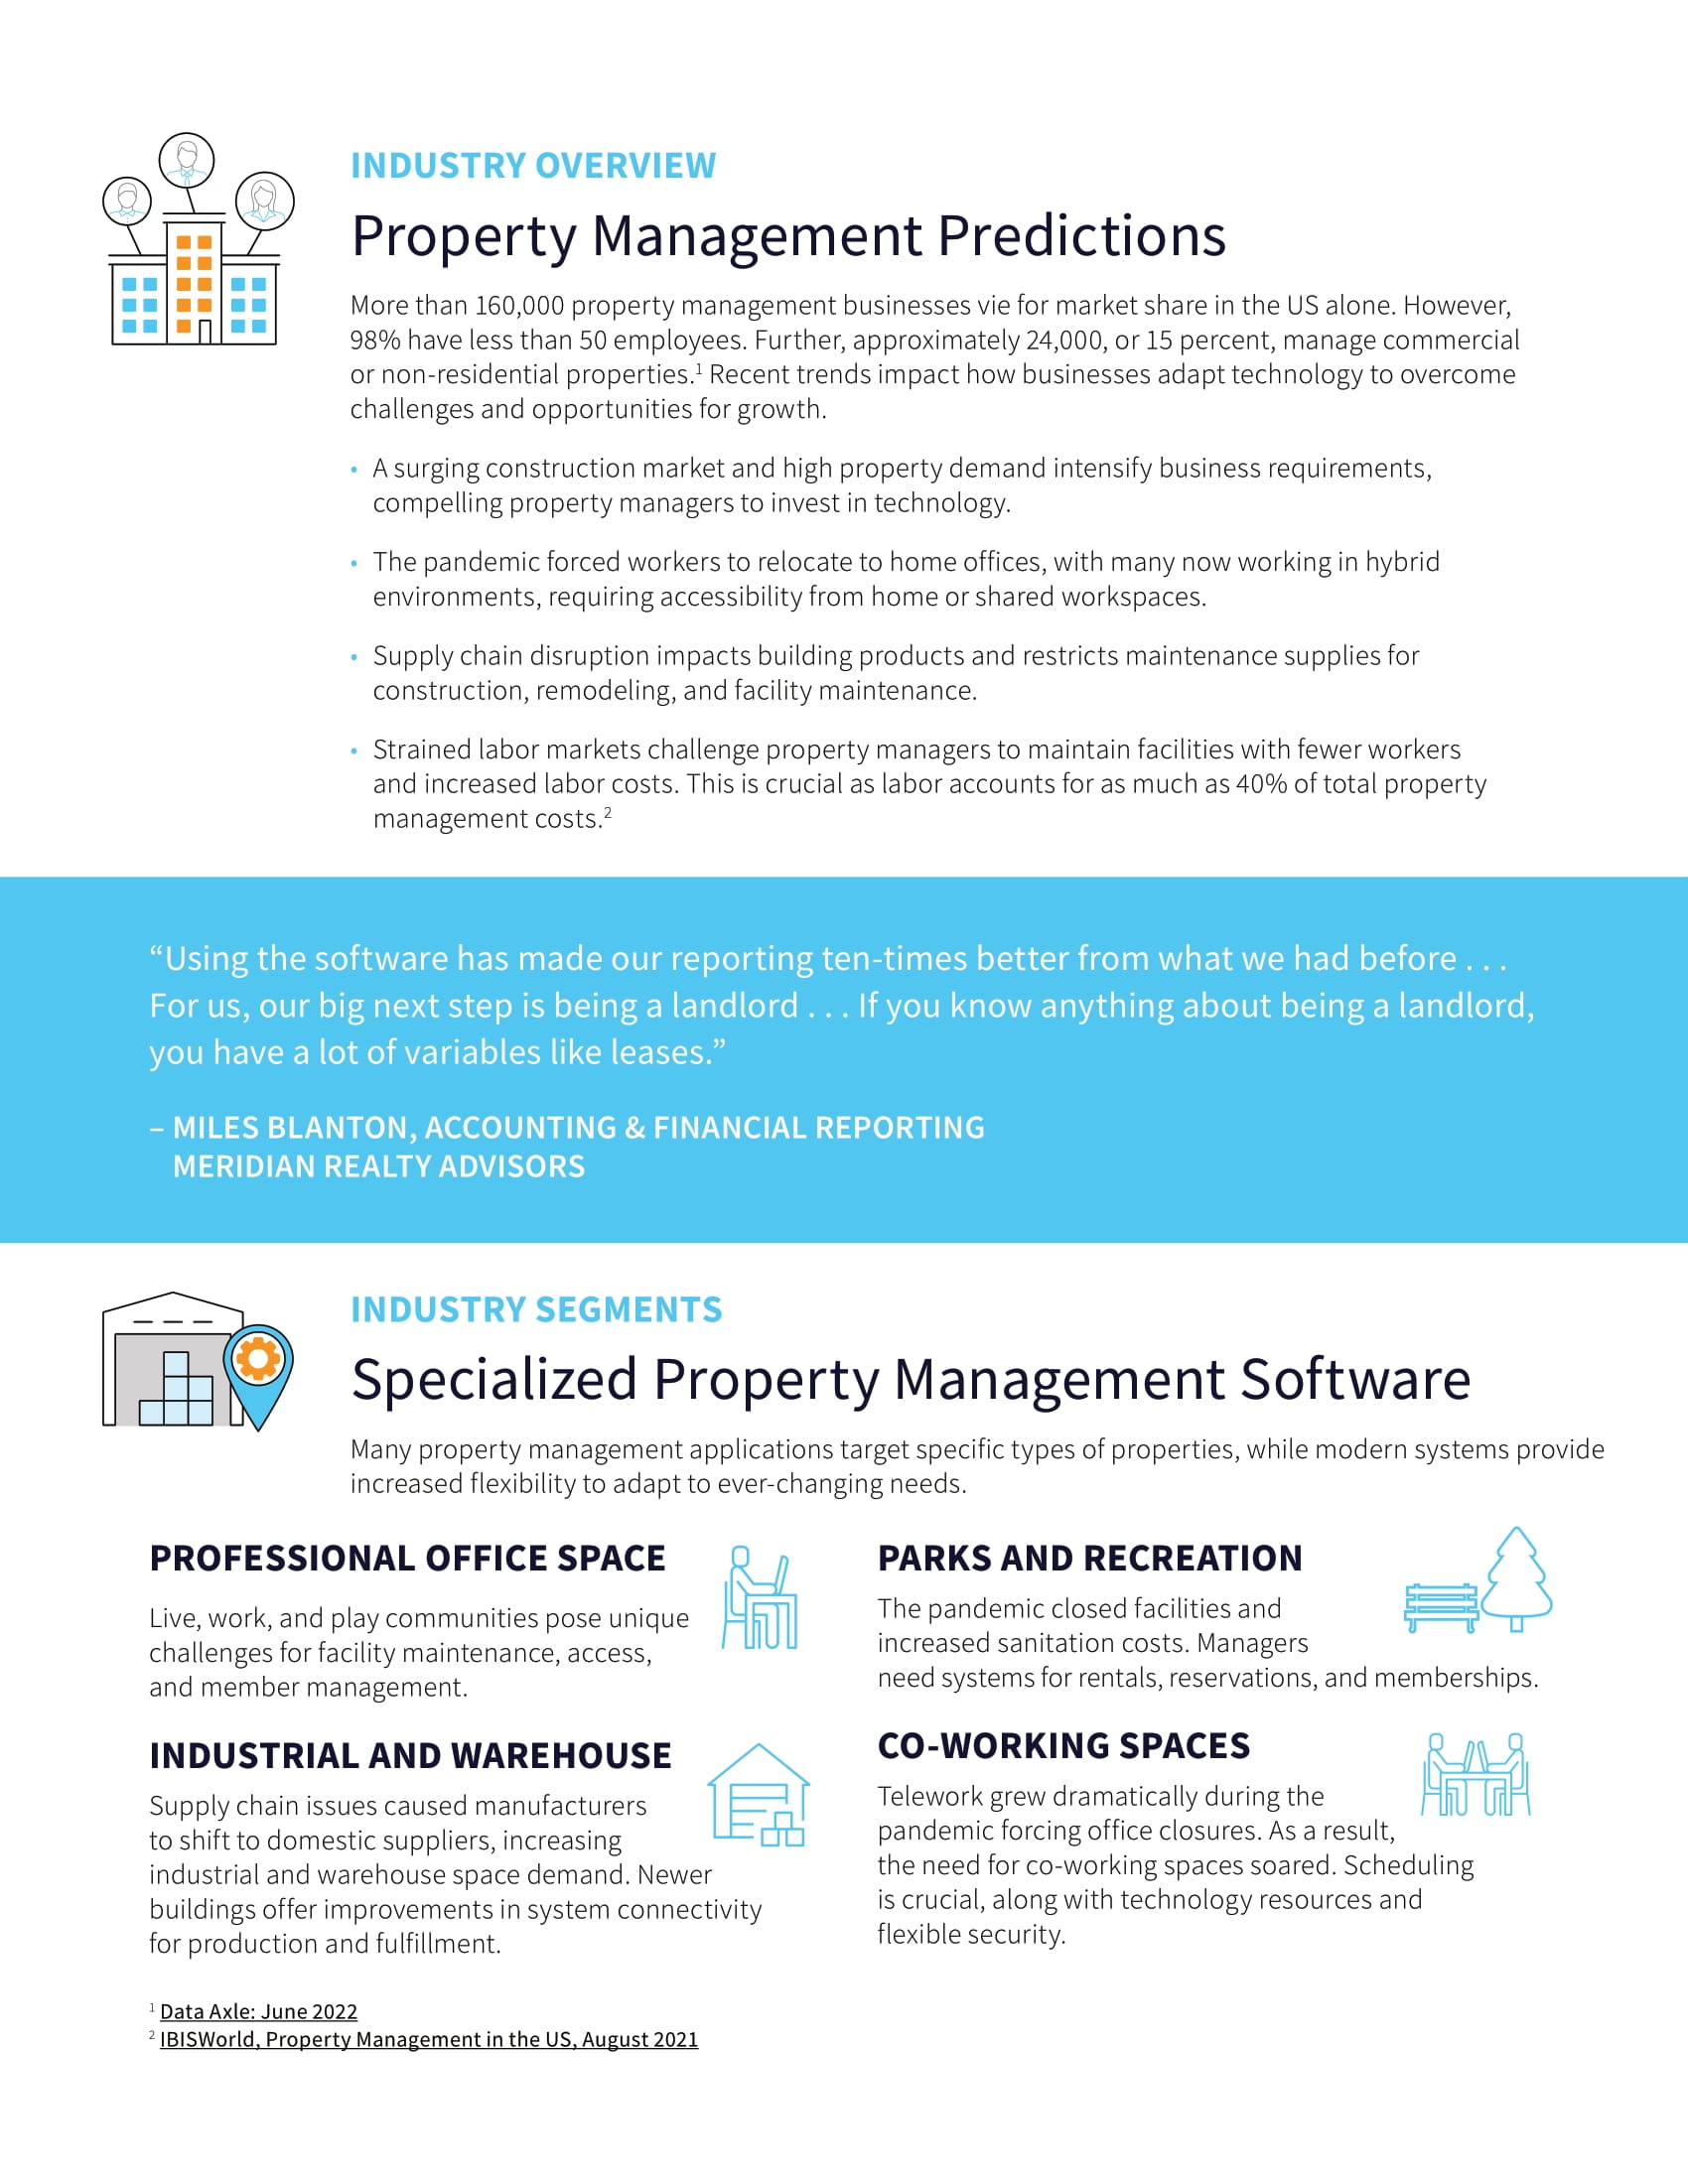 Preste un mejor servicio a los inquilinos con un sistema de gestión inmobiliaria moderno y basado en la nube , página 1